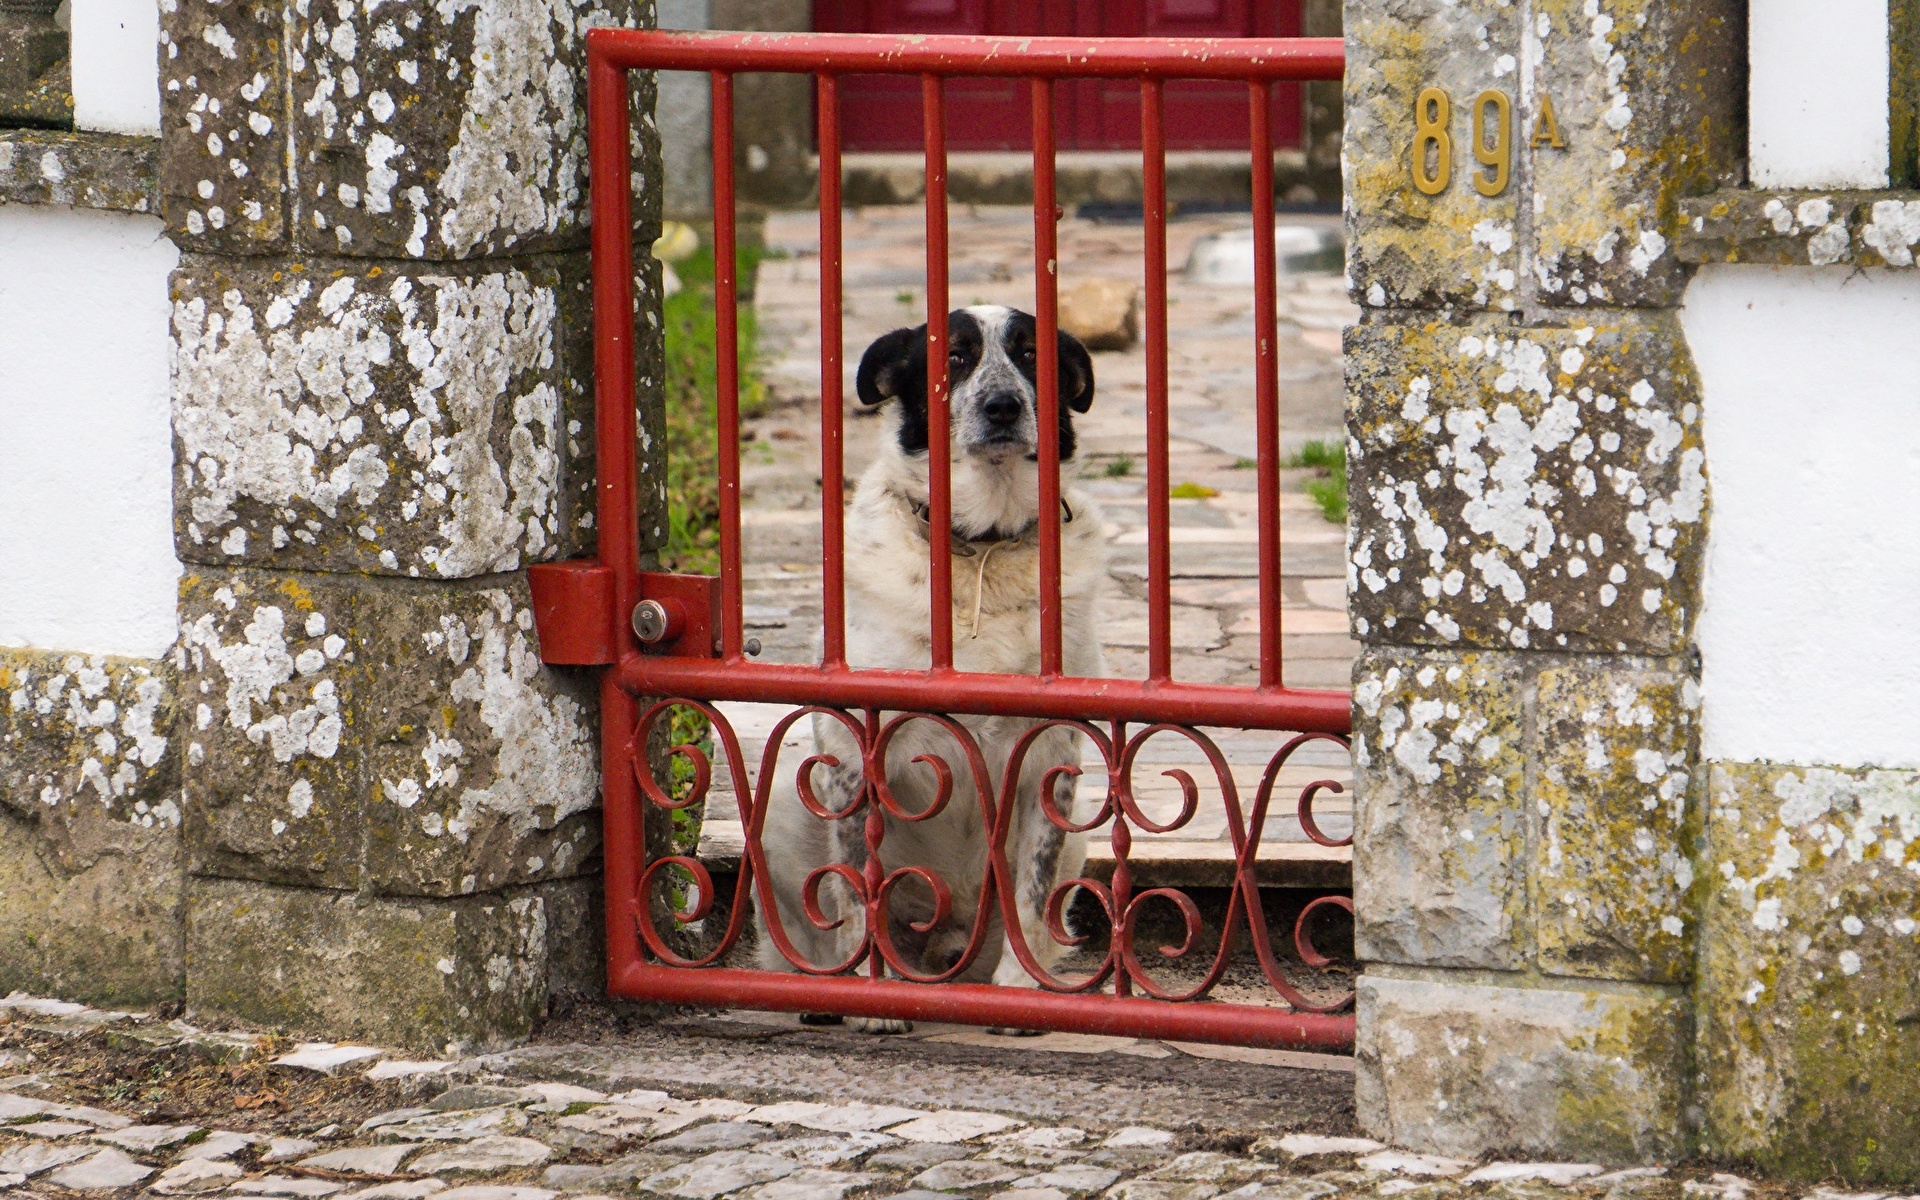 собака забор dog the fence скачать